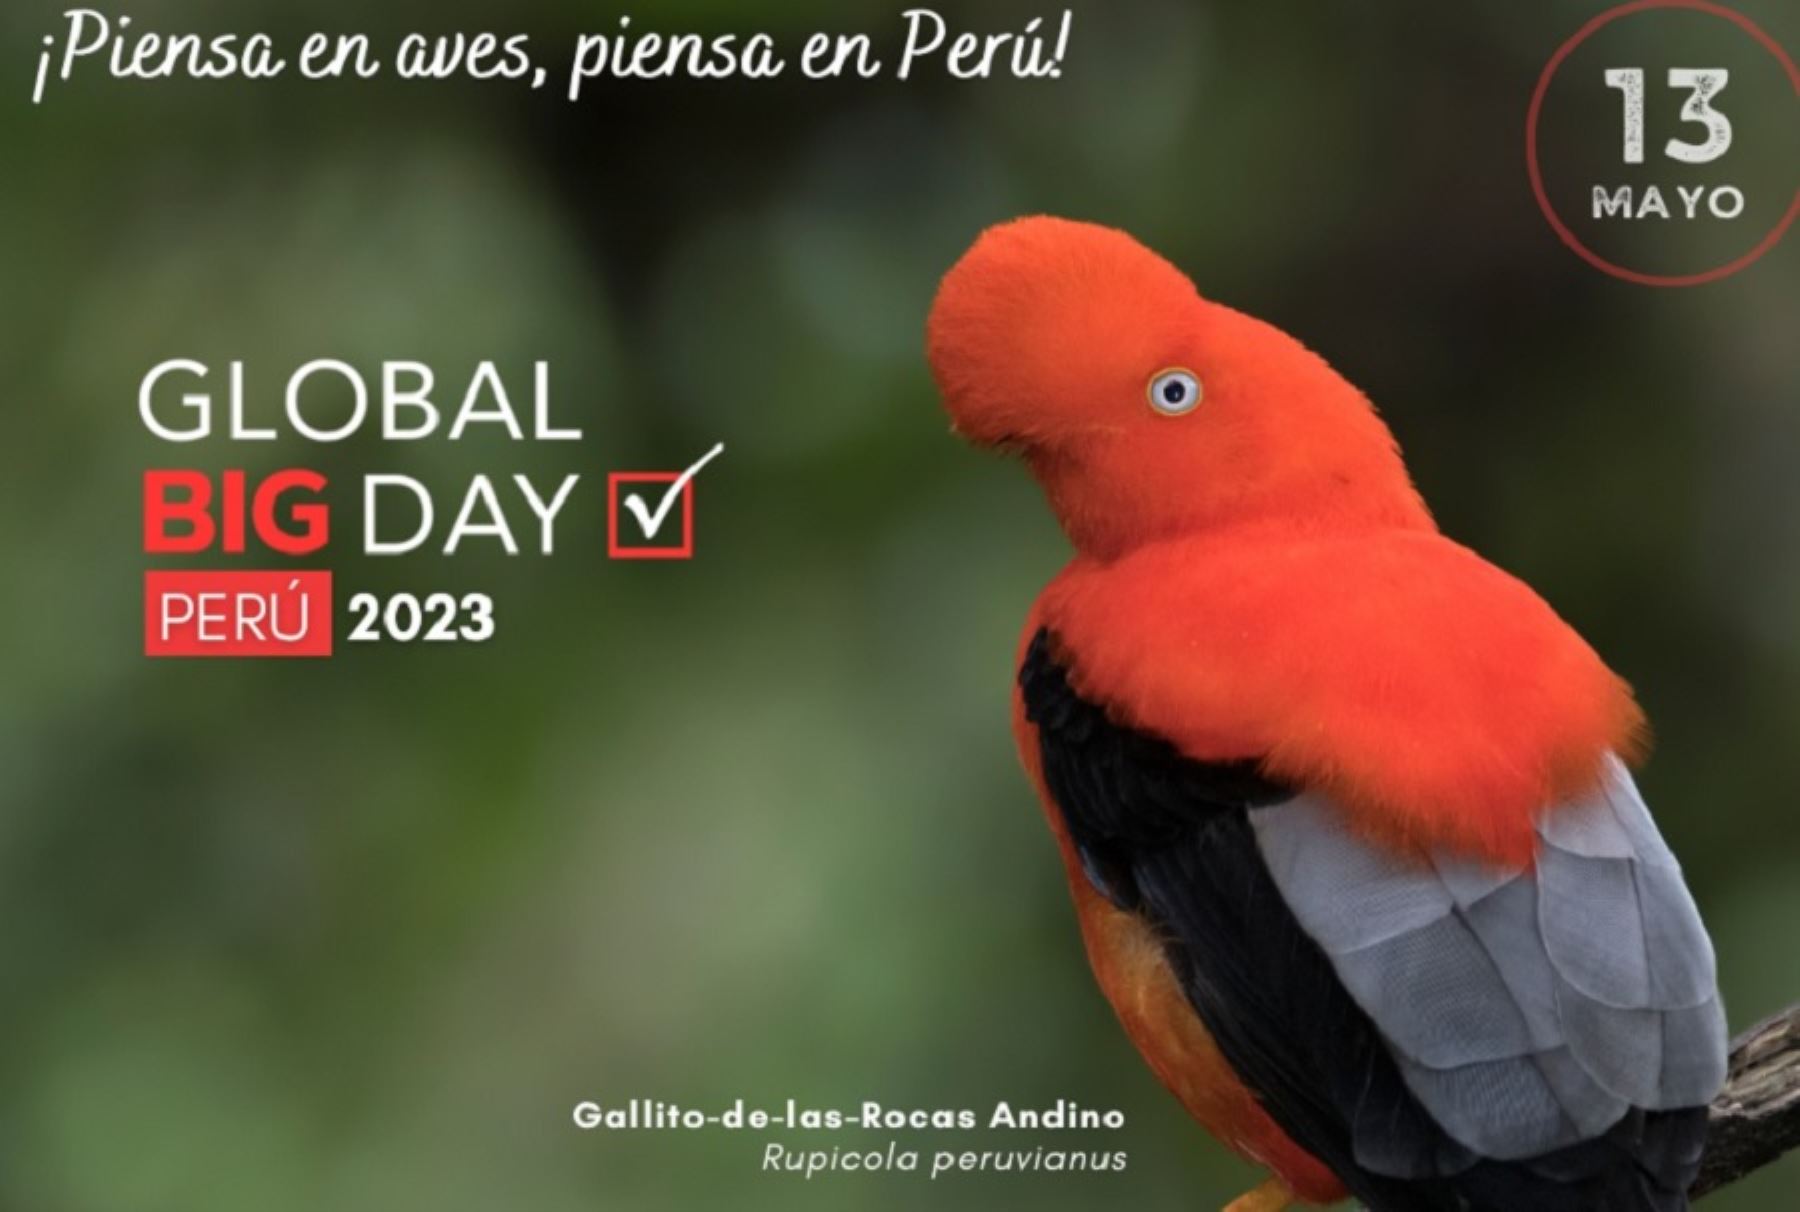 Con cerca de 2,000 especies de aves identificadas, de las cuales más de un centenar son endémicas, el Perú es considerado un auténtico paraíso de las aves. Esta notable riqueza en avifauna lo ubica como un país megadiverso y destino privilegiado para la observación de aves o birdwatching en certámenes internacionales como el Global Big Day 2023, que se desarrolla en todo el mundo este sábado 13 de mayo.